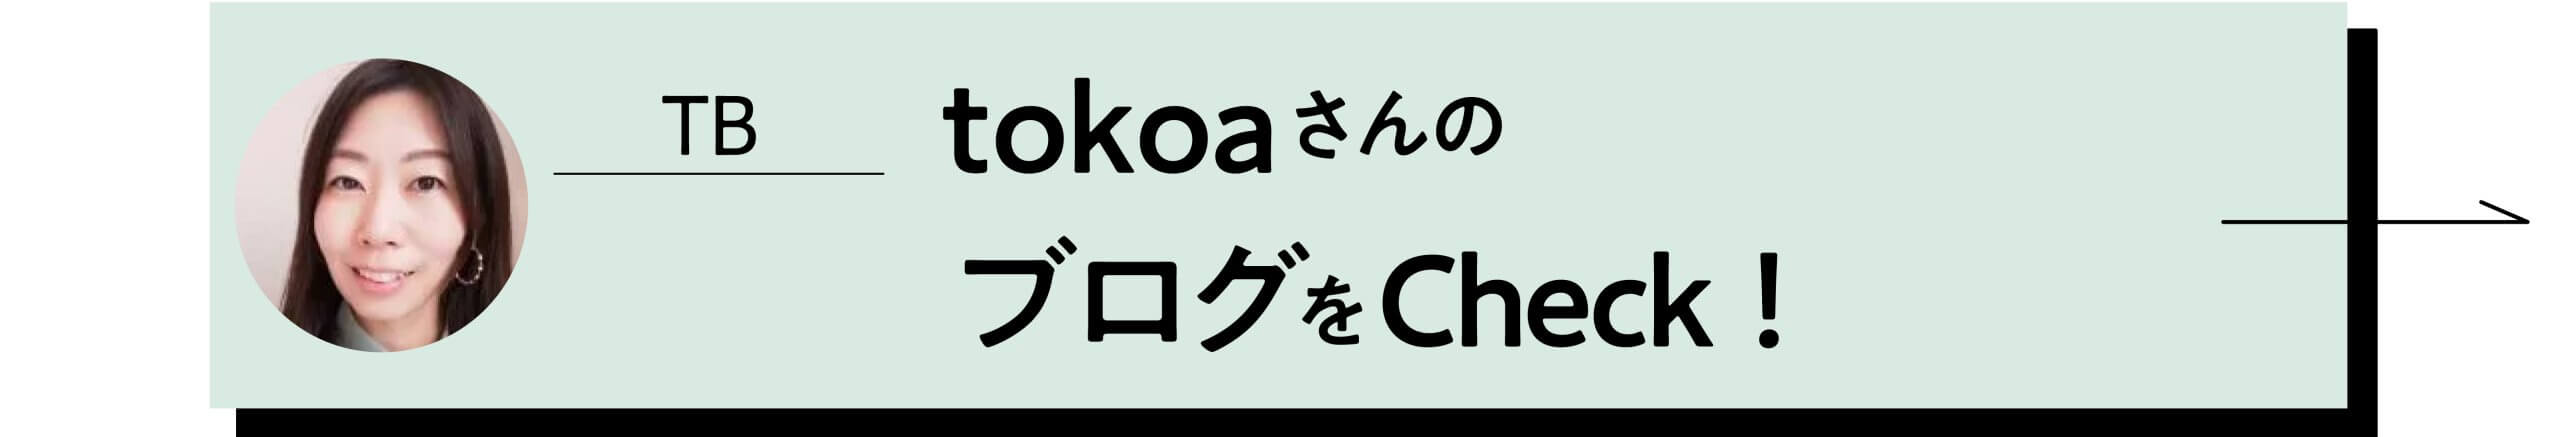 tokoaさんのブログをCheck!